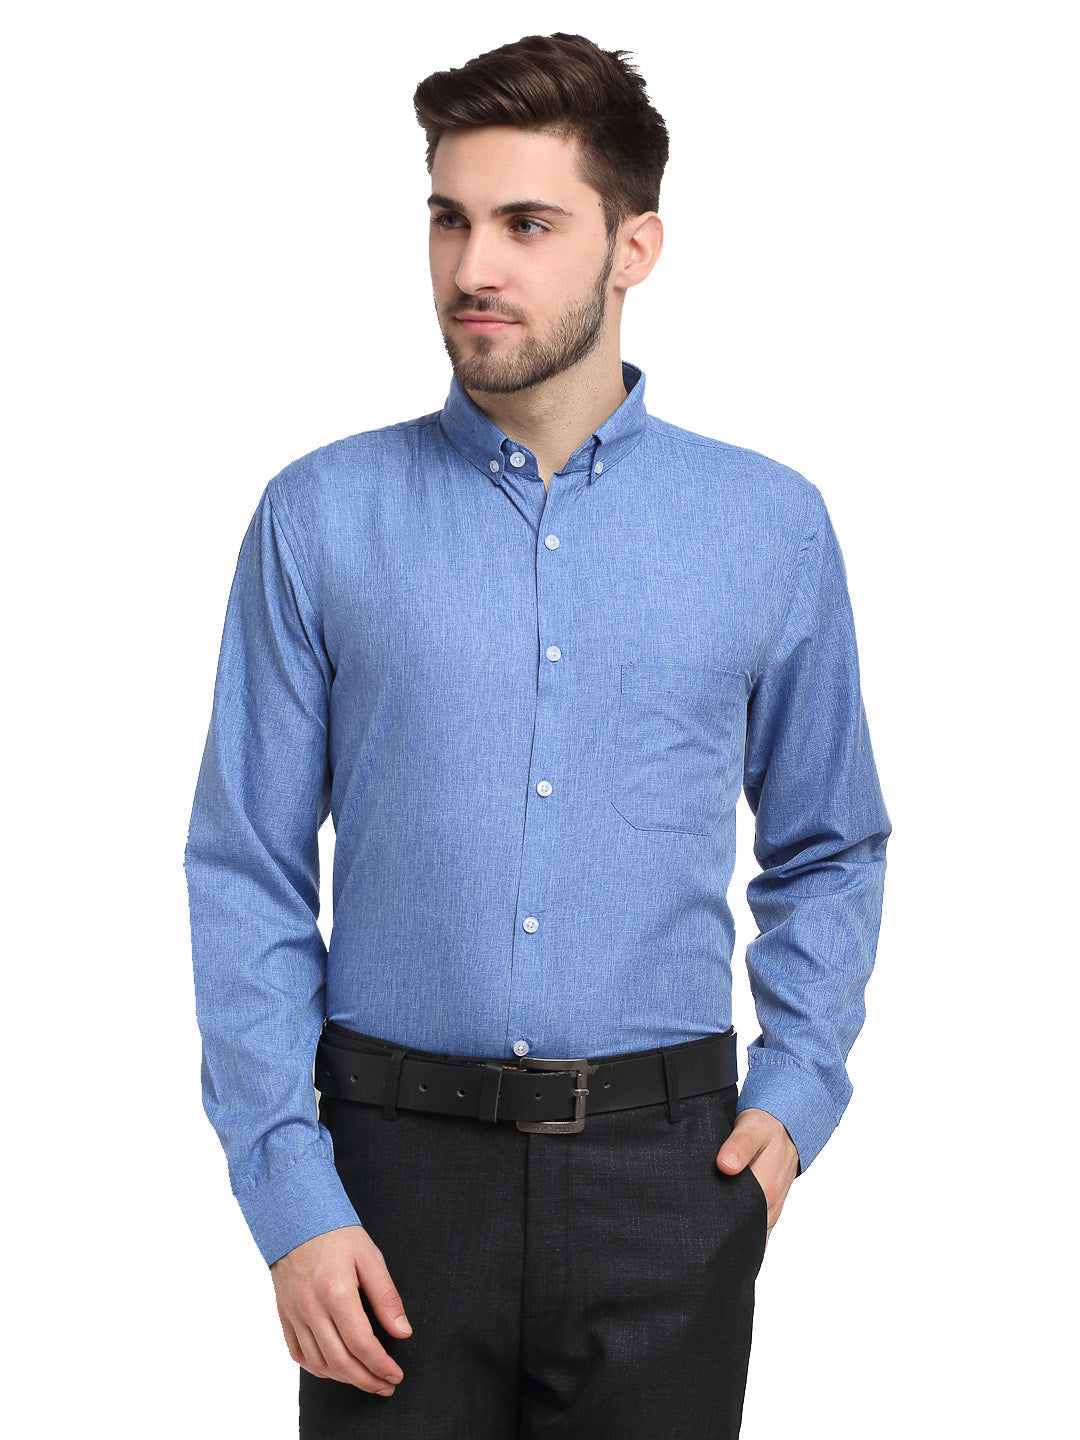 Men's Blue Button Down Collar Cotton Formal Shirt ( SF 785Light-Blue ) - Jainish